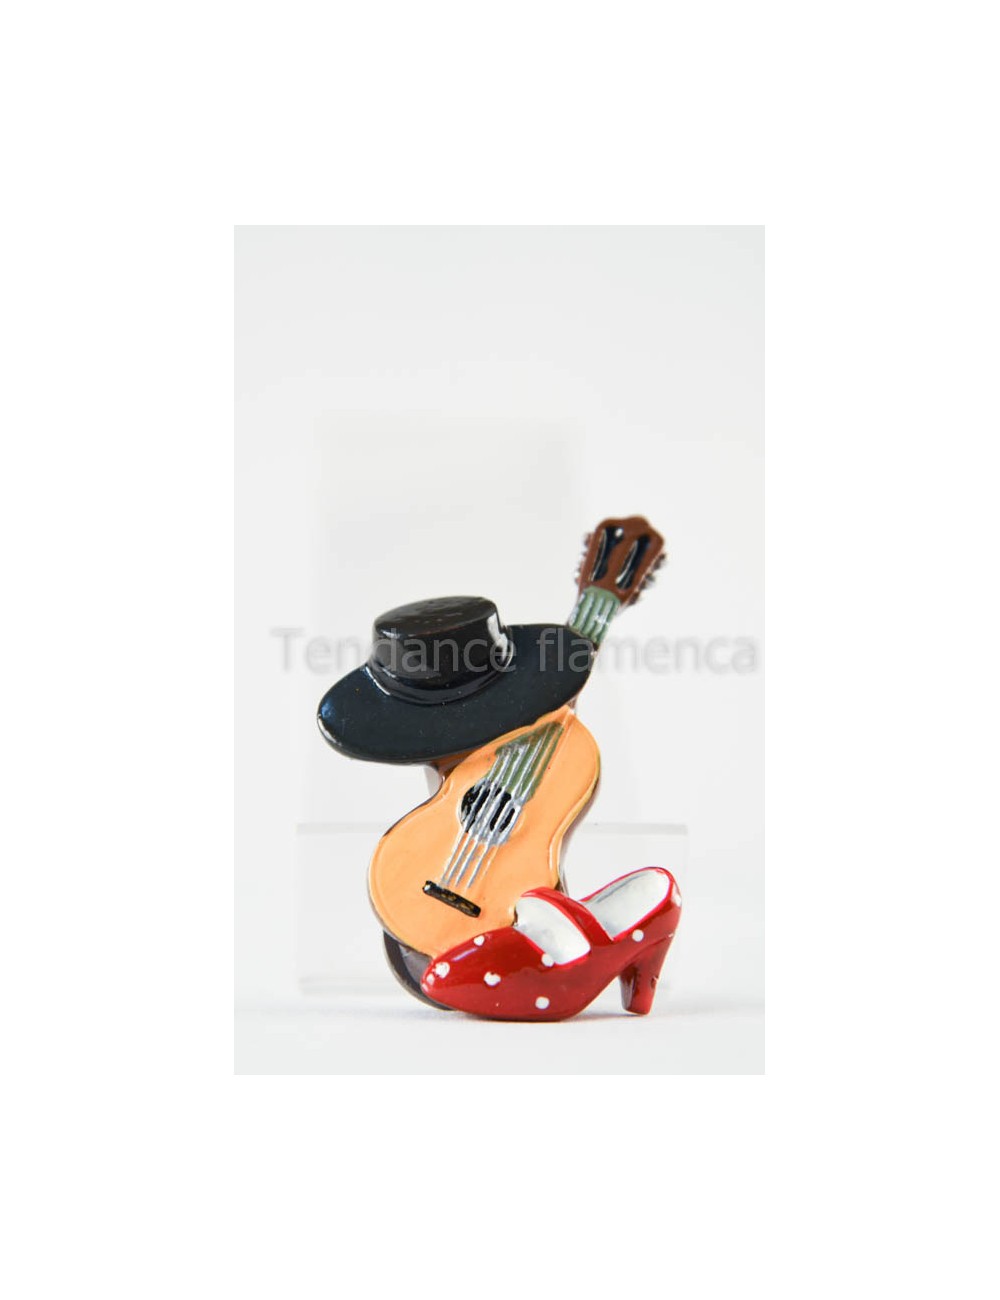 Magnet Flamenco guitare